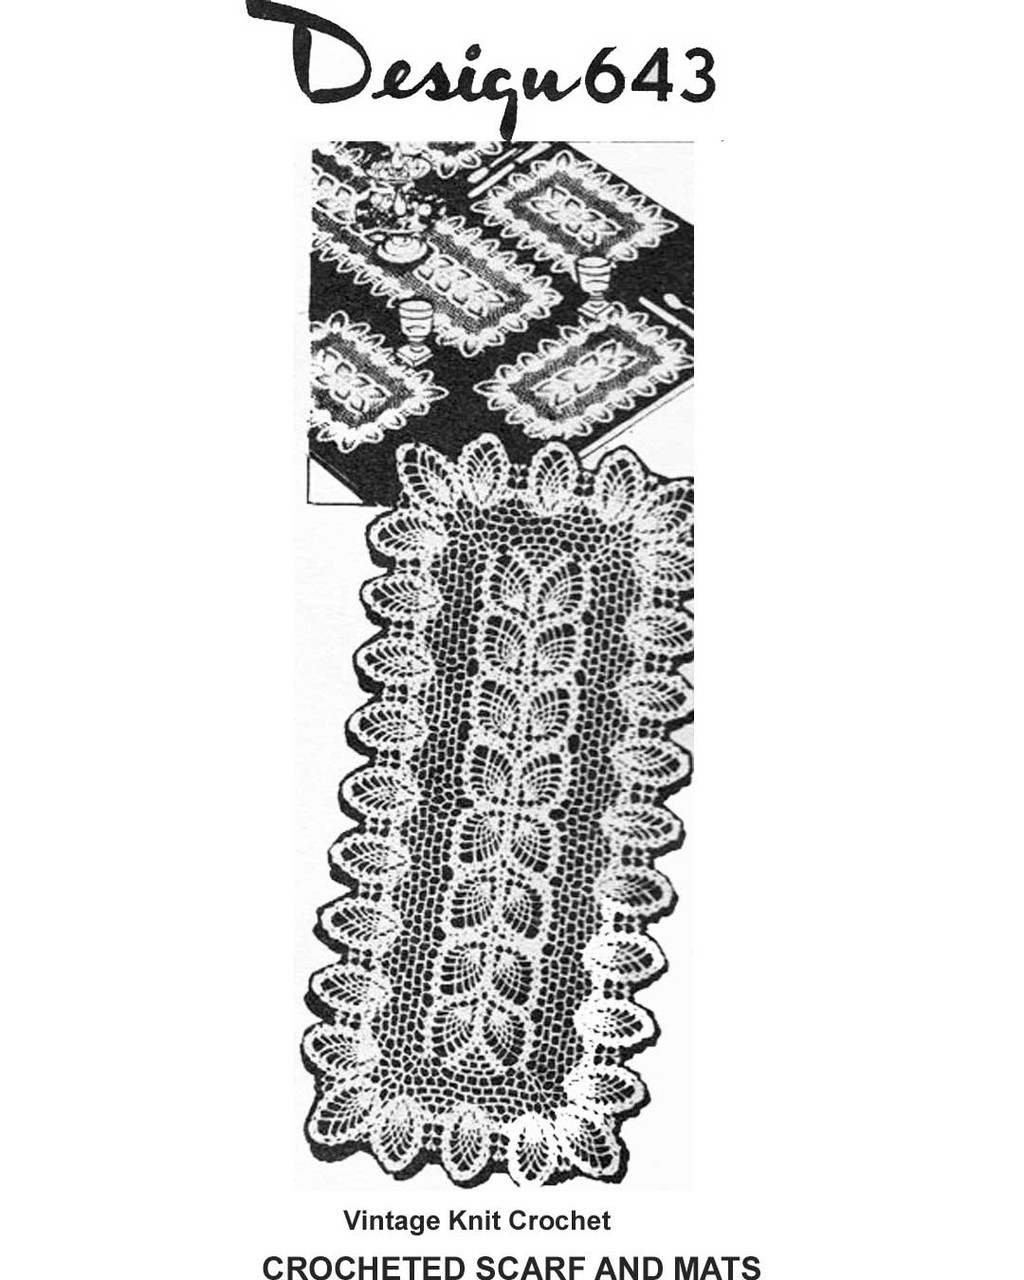 Crocheted pineapple runner mats pattern, Mail Order Design 643